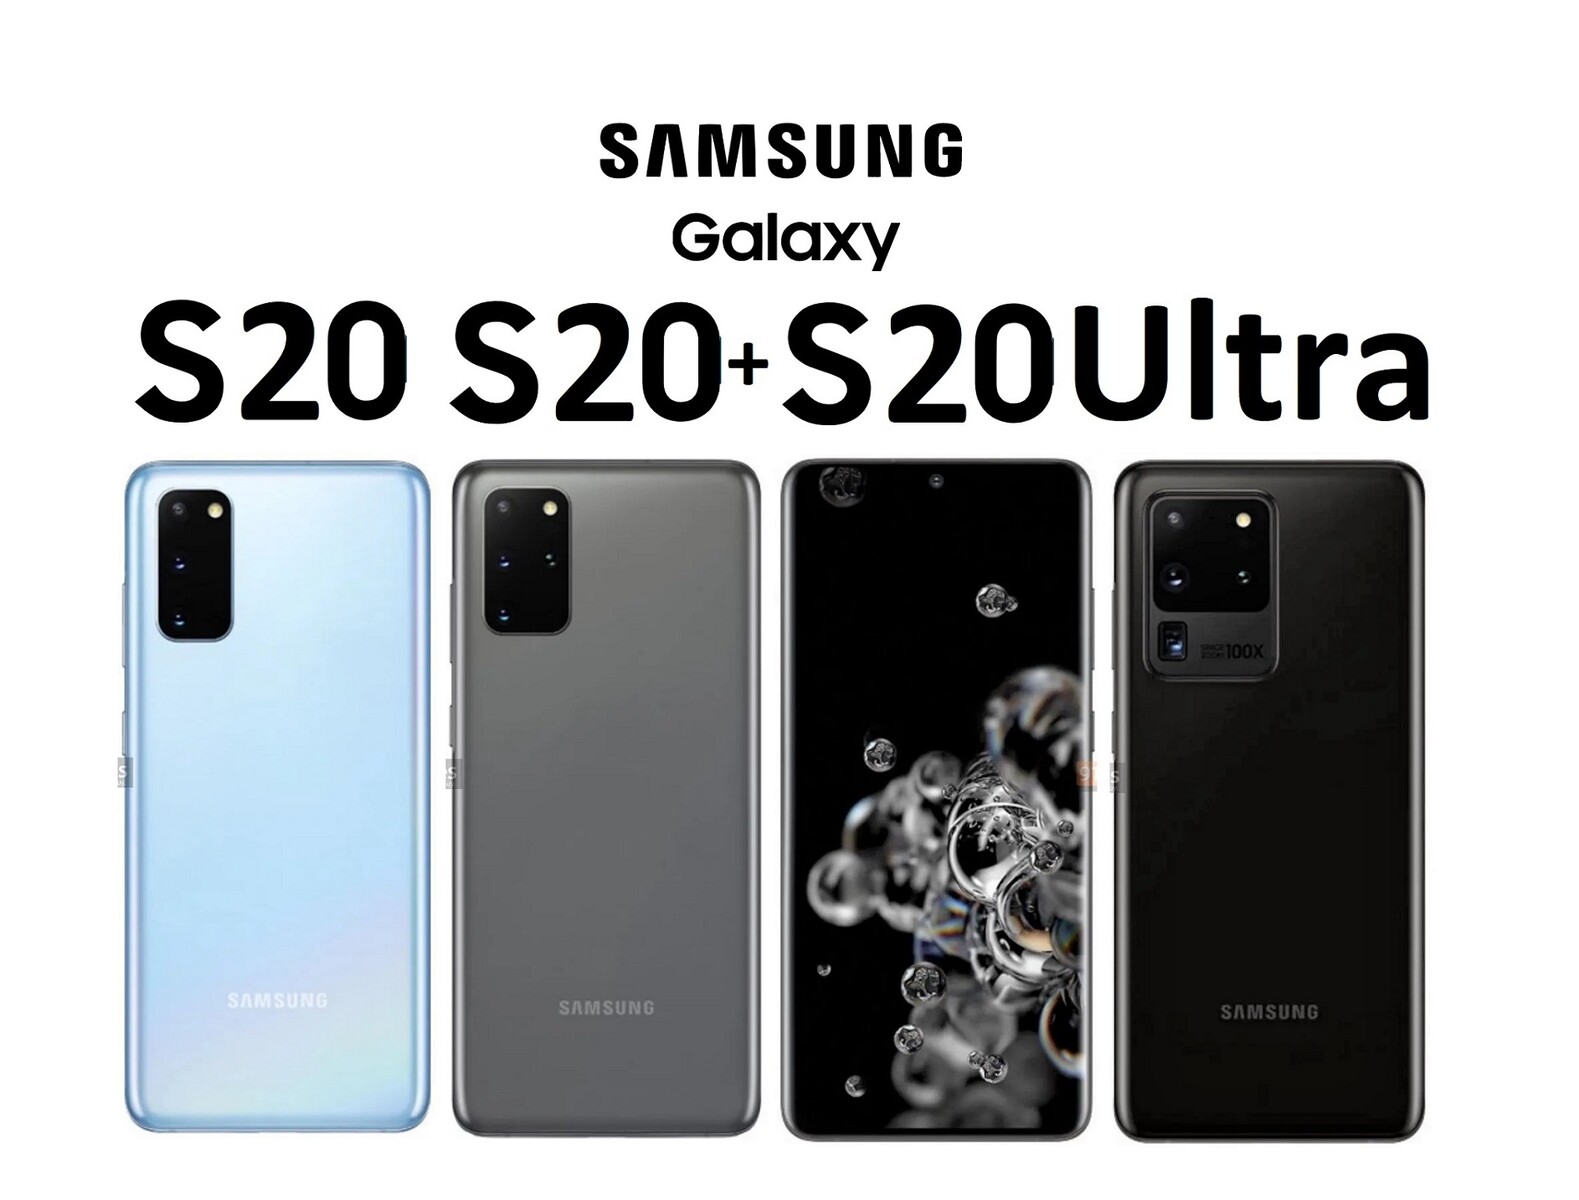 Samsung Galaxy S20 Pressebild